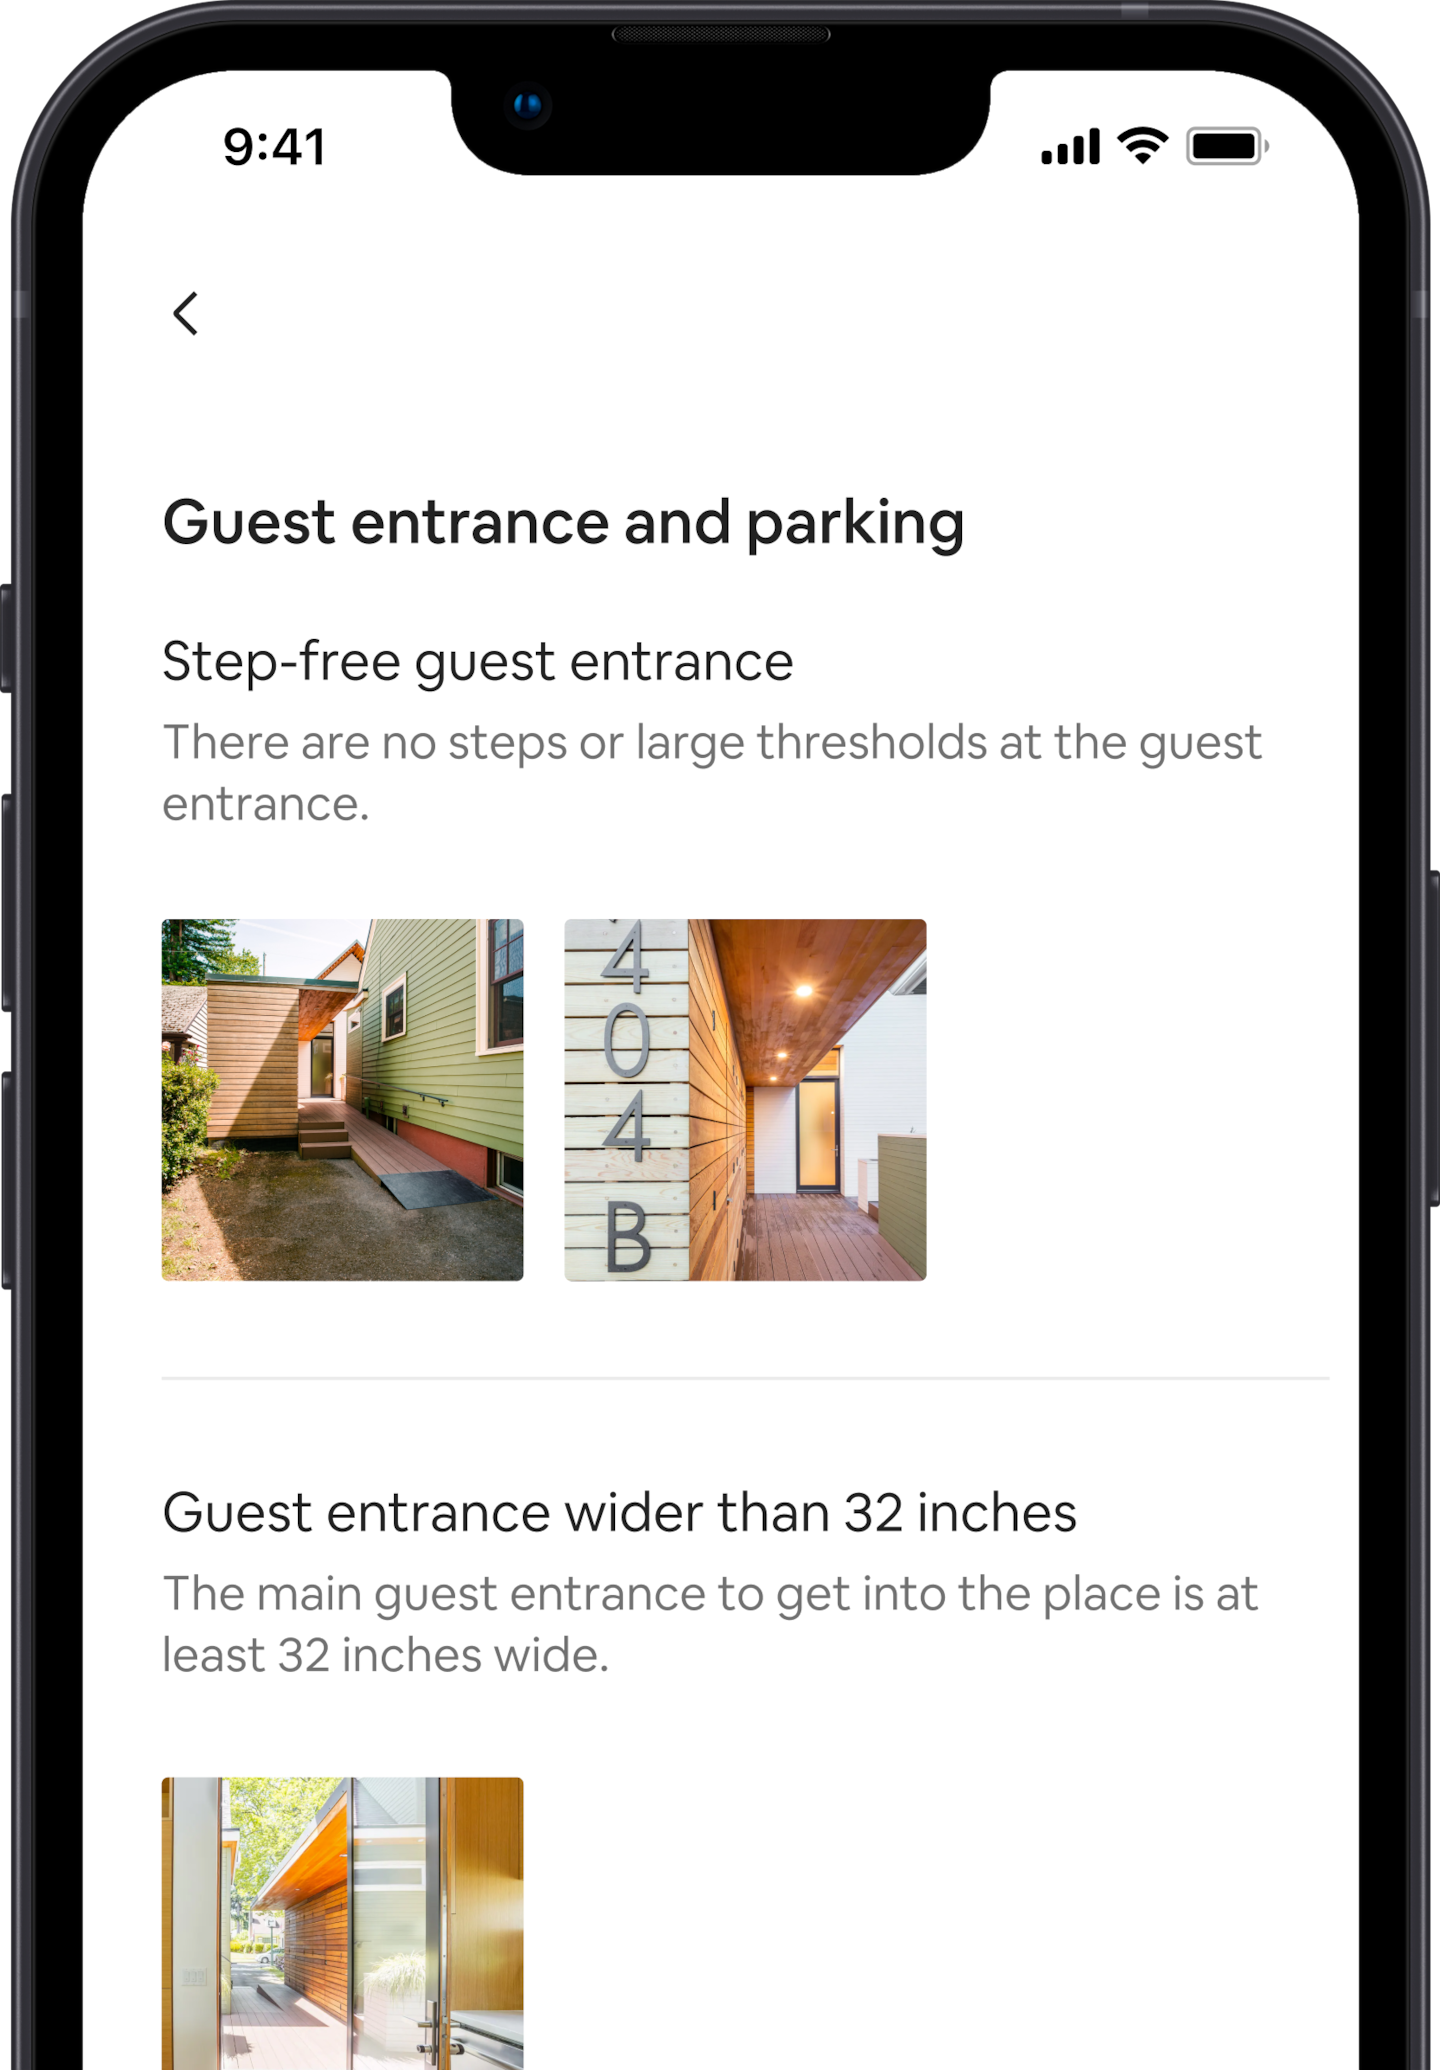 Una pantalla d'un mòbil mostra una sèrie de prestacions d'accessibilitat per a un anunci a Airbnb. La primera diu «entrada sense esglaons per als hostes» i, a sota, mostra imatges que es corresponen amb aquesta prestació. Més avall hi ha una altra prestació d'accessibilitat que diu «entrada per a hostes de més de 81 centímetres», amb la imatge corresponent.